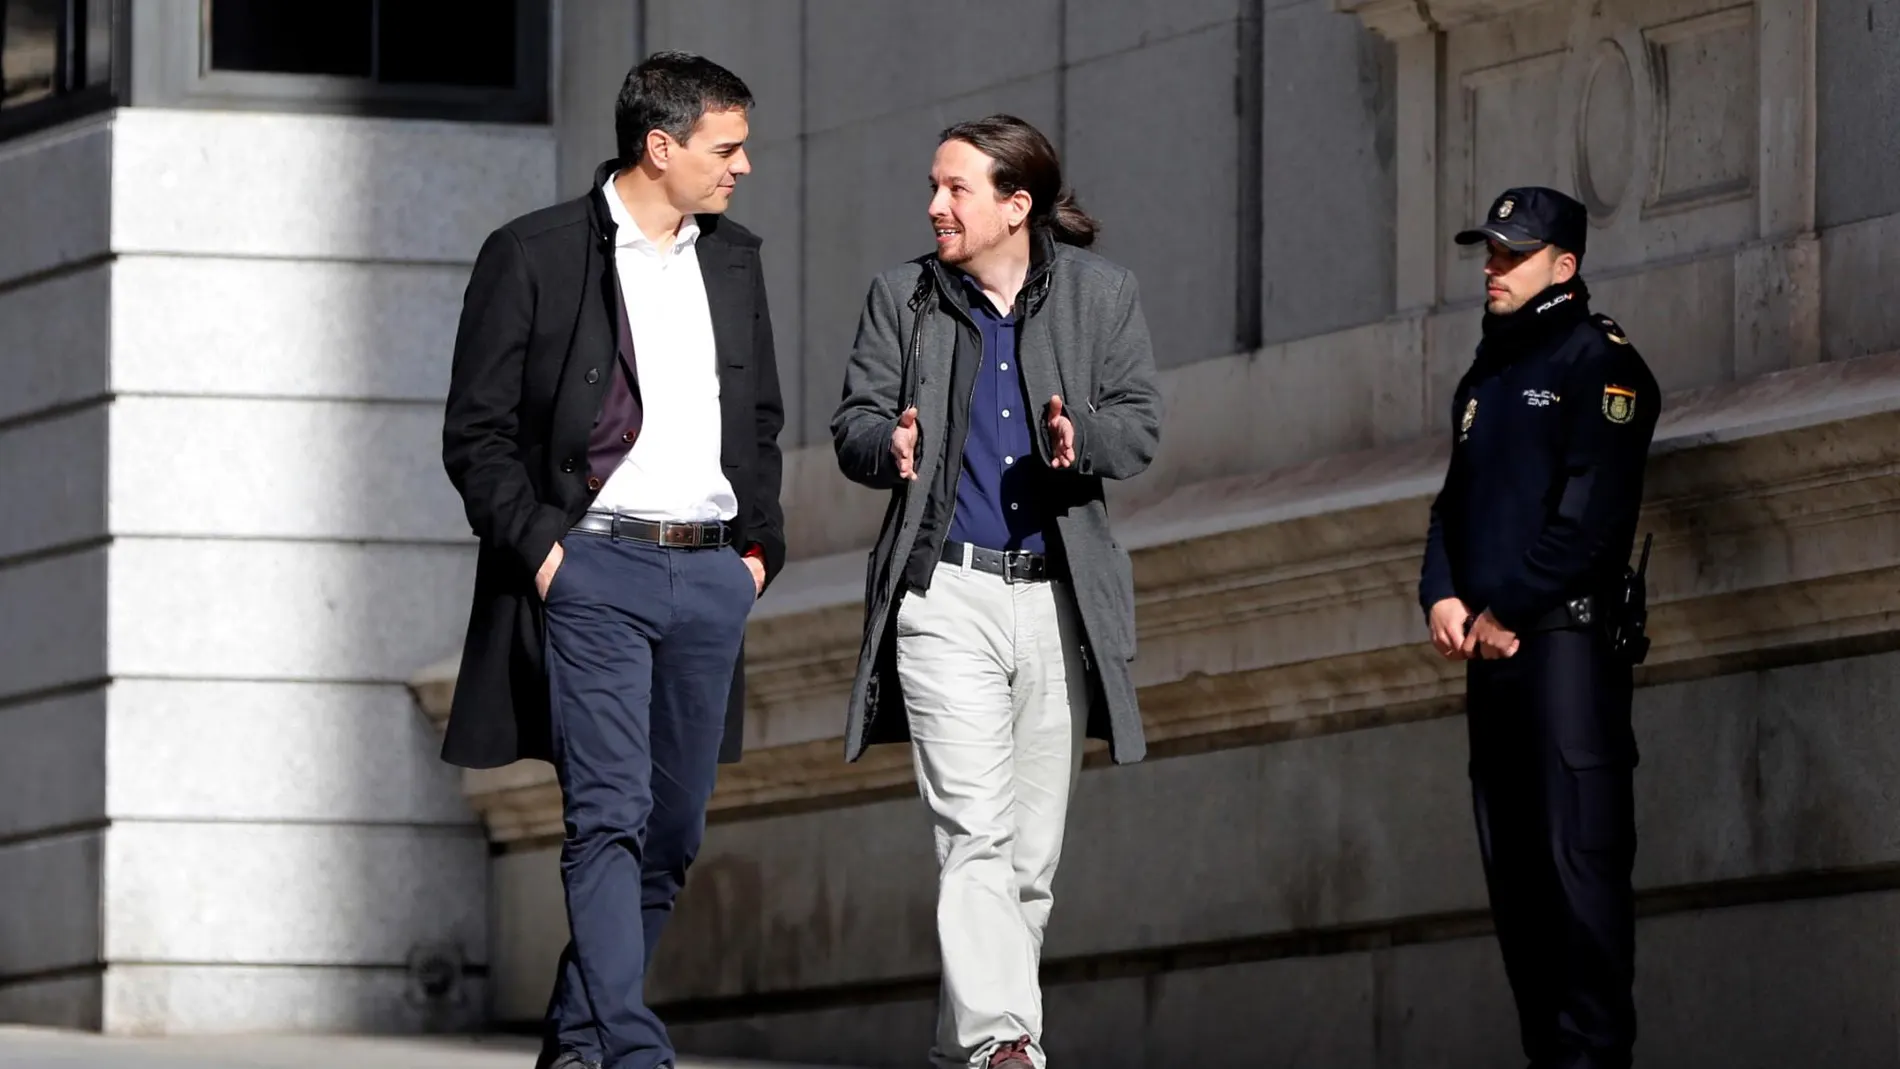 Marzo de 2016, Pedro Sánchez y Pablo Iglesias llegan juntos al Congreso